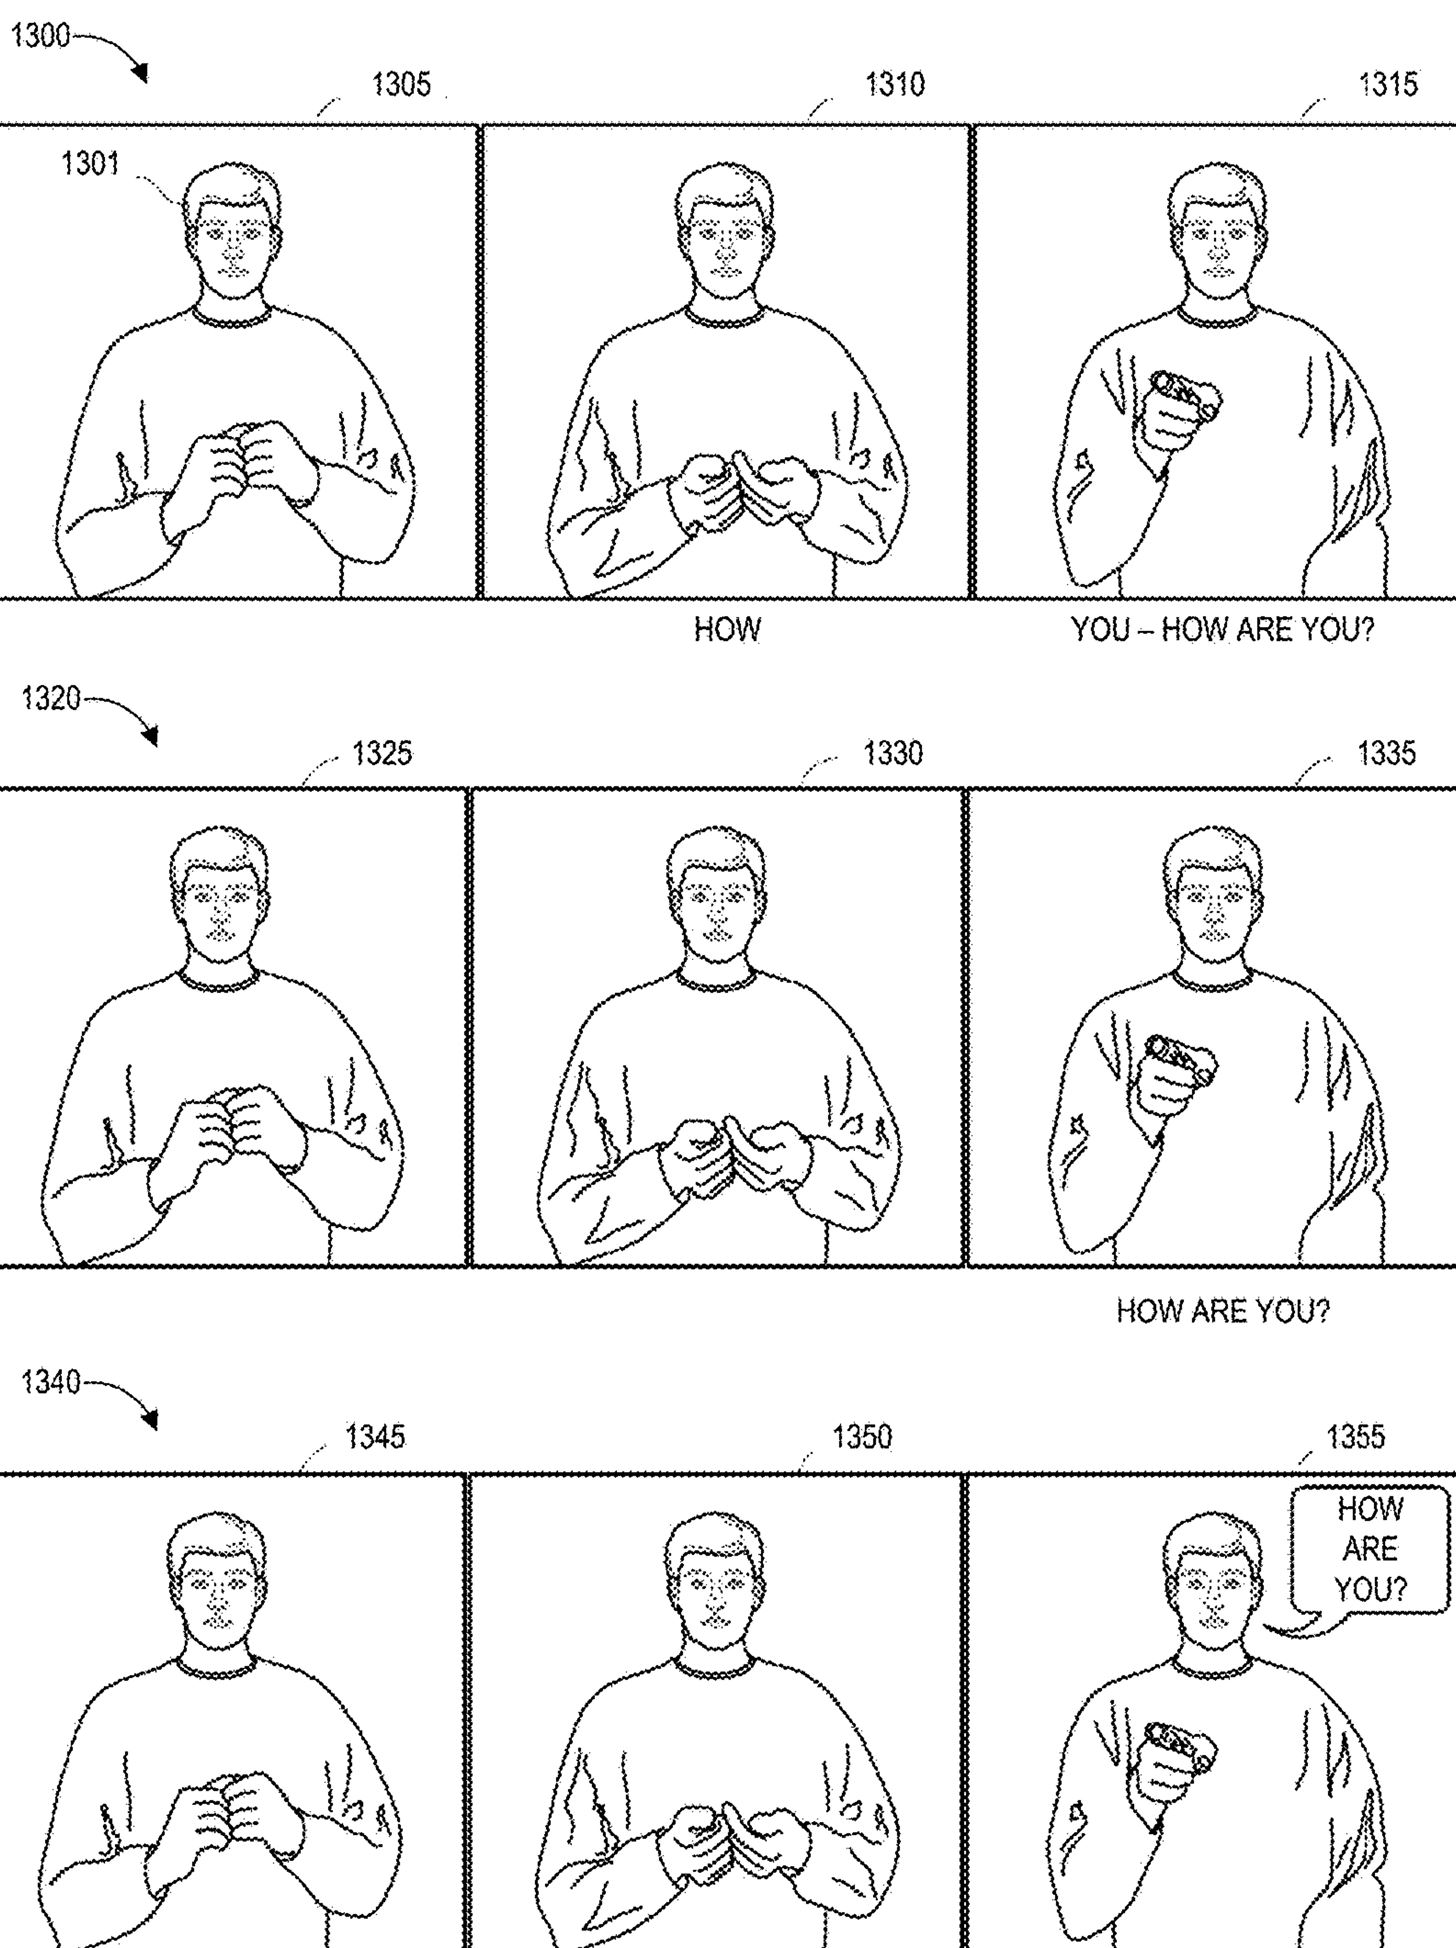 Magic Leap Patent Reveals Plans for Sign Language & Text Translation App